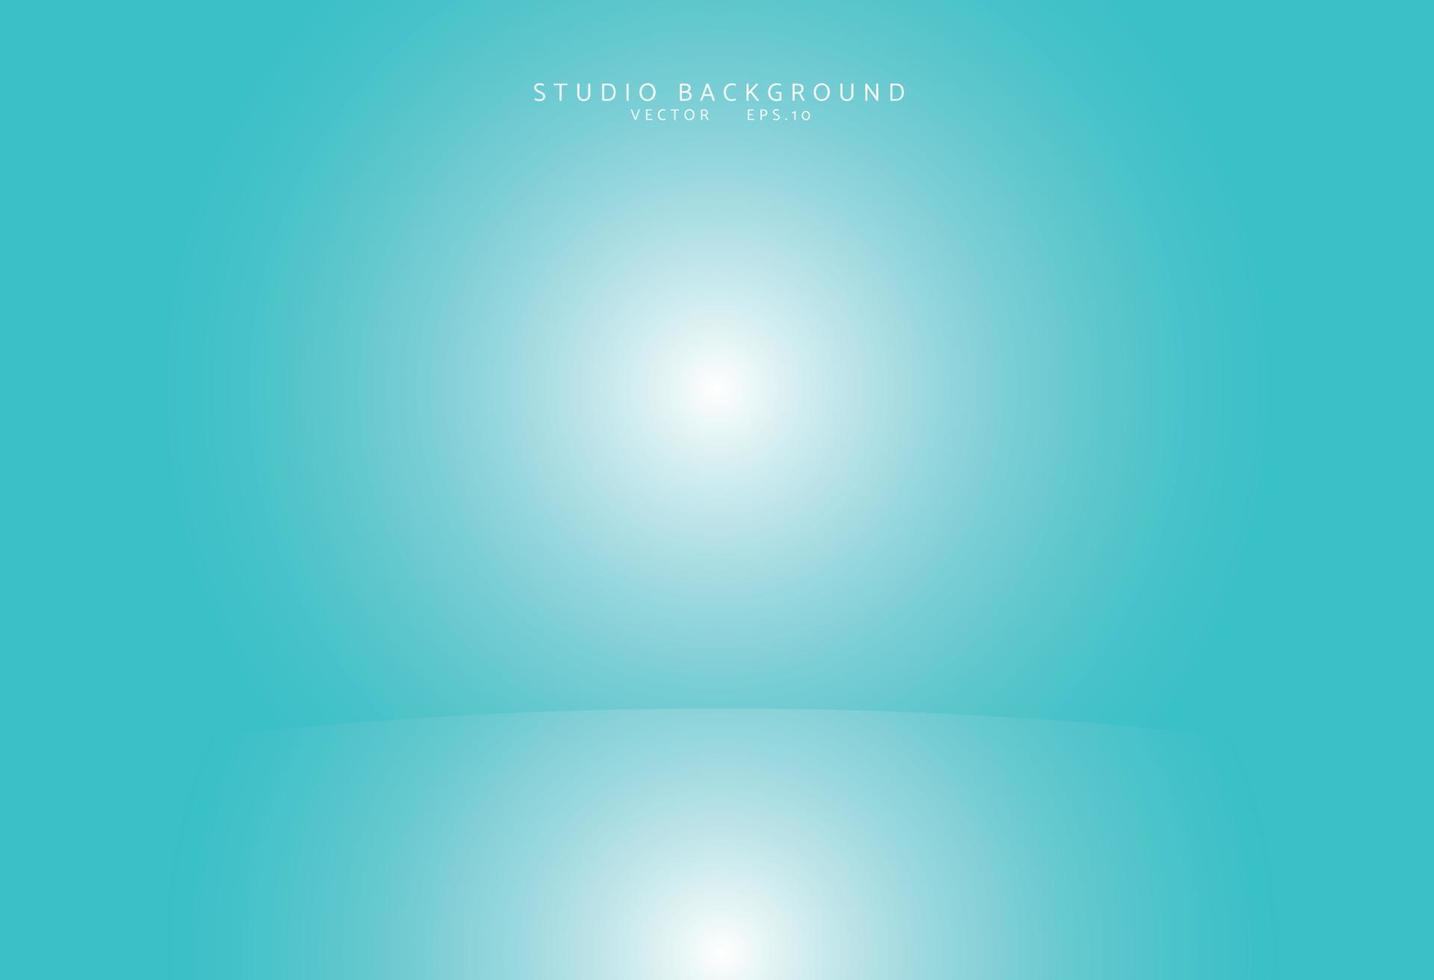 sfondo blu camera studio vuoto. interni luminosi con copyspace per il tuo progetto creativo. illustrazione vettoriale eps 10